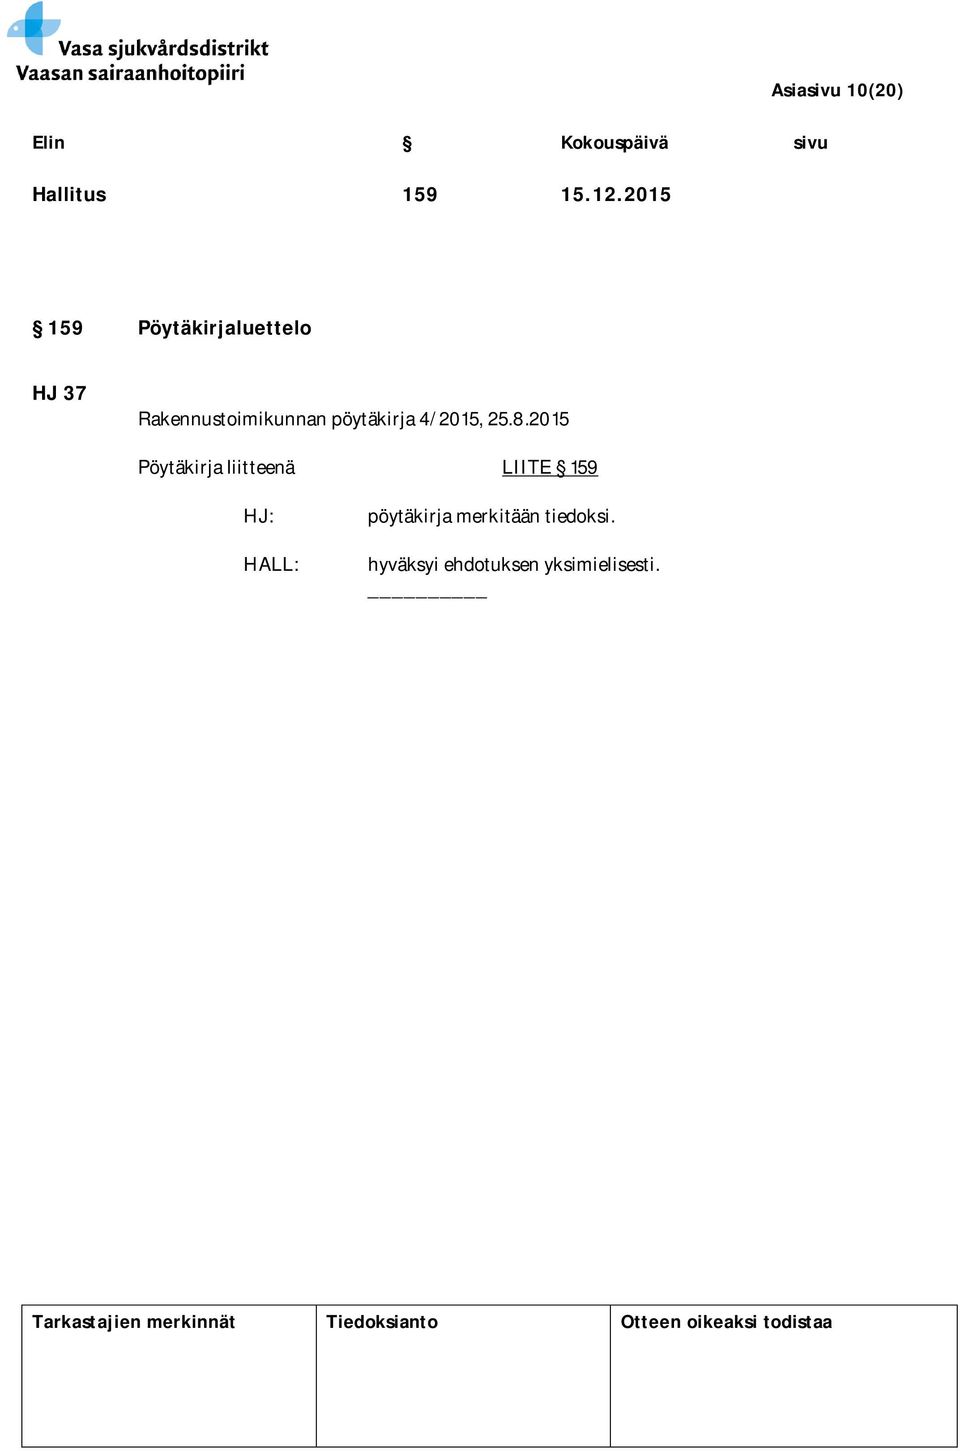 Rakennustoimikunnan pöytäkirja 4/2015, 25.8.